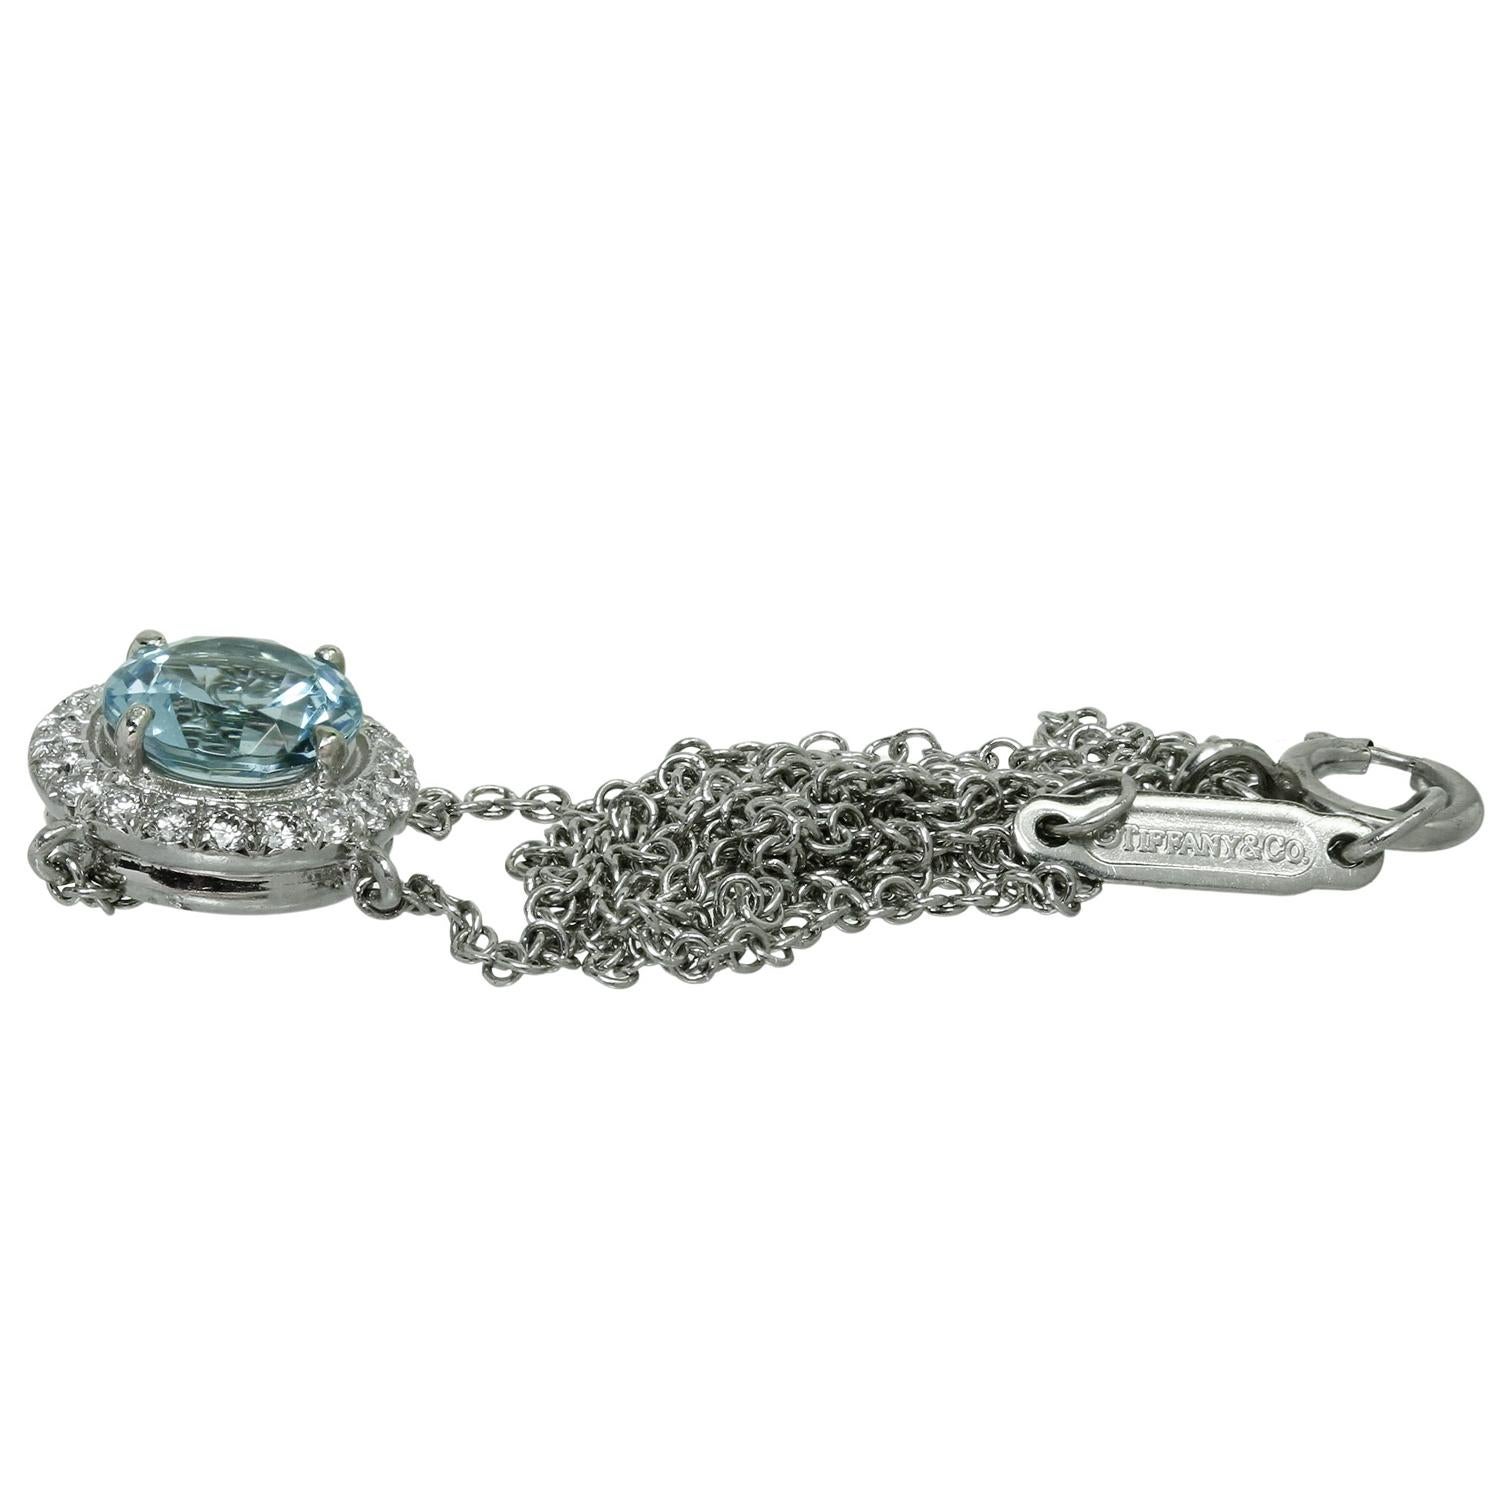 Ce magnifique collier Tiffany & Co. de la collection sophistiquée Soleste est réalisé en platine et présente un pendentif rond serti d'une aqumarine bleue d'un poids estimé à 0,70 carats entourée de diamants ronds taille brillant d'un poids estimé à